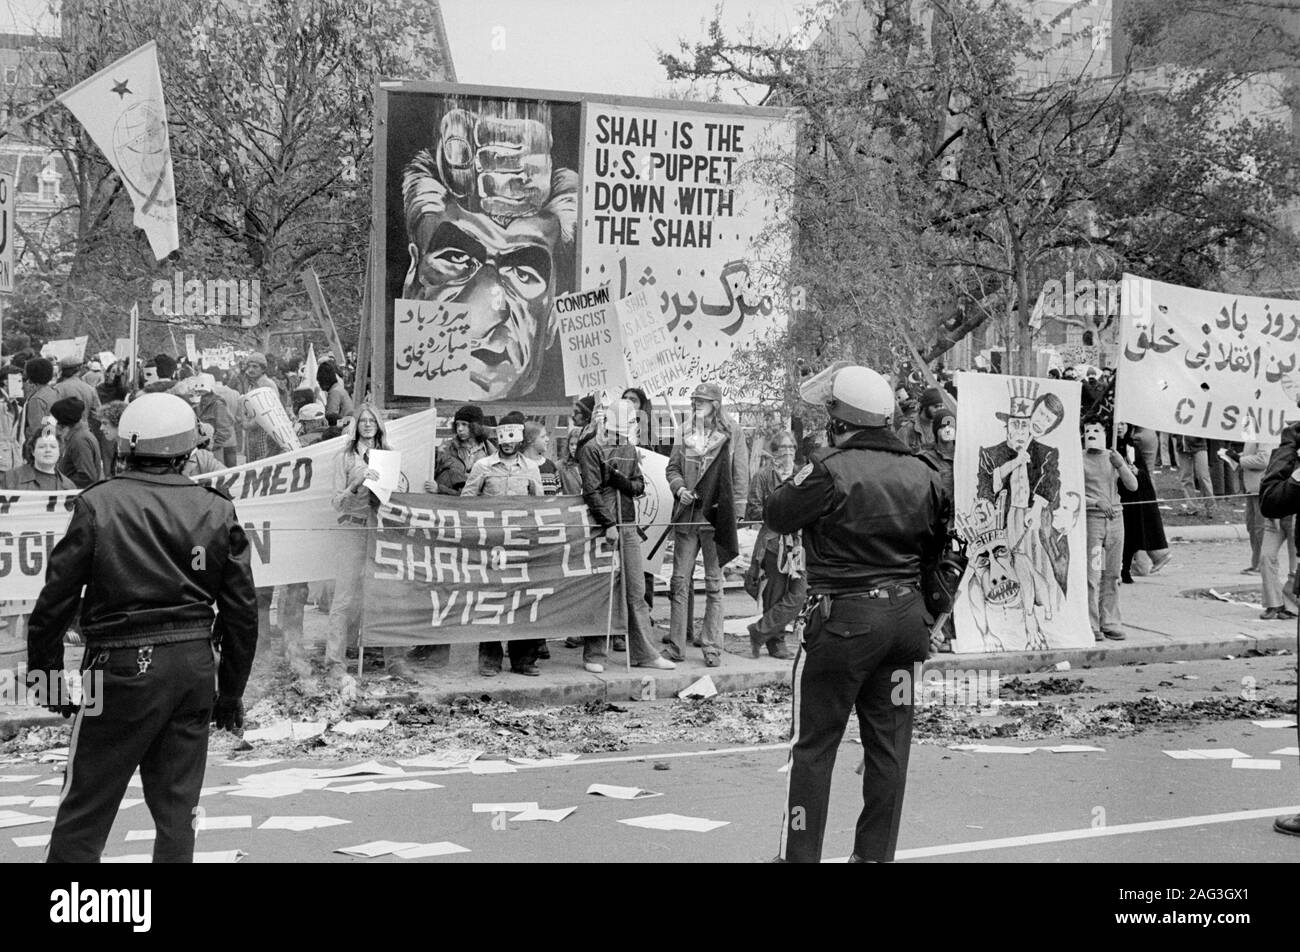 Die Demonstranten während des Besuchs von Mohammad Reza Pahlavi, Schah von Iran, Washington, D.C., USA, Foto: Marion S. Trikosko, 15. November 1977 Stockfoto